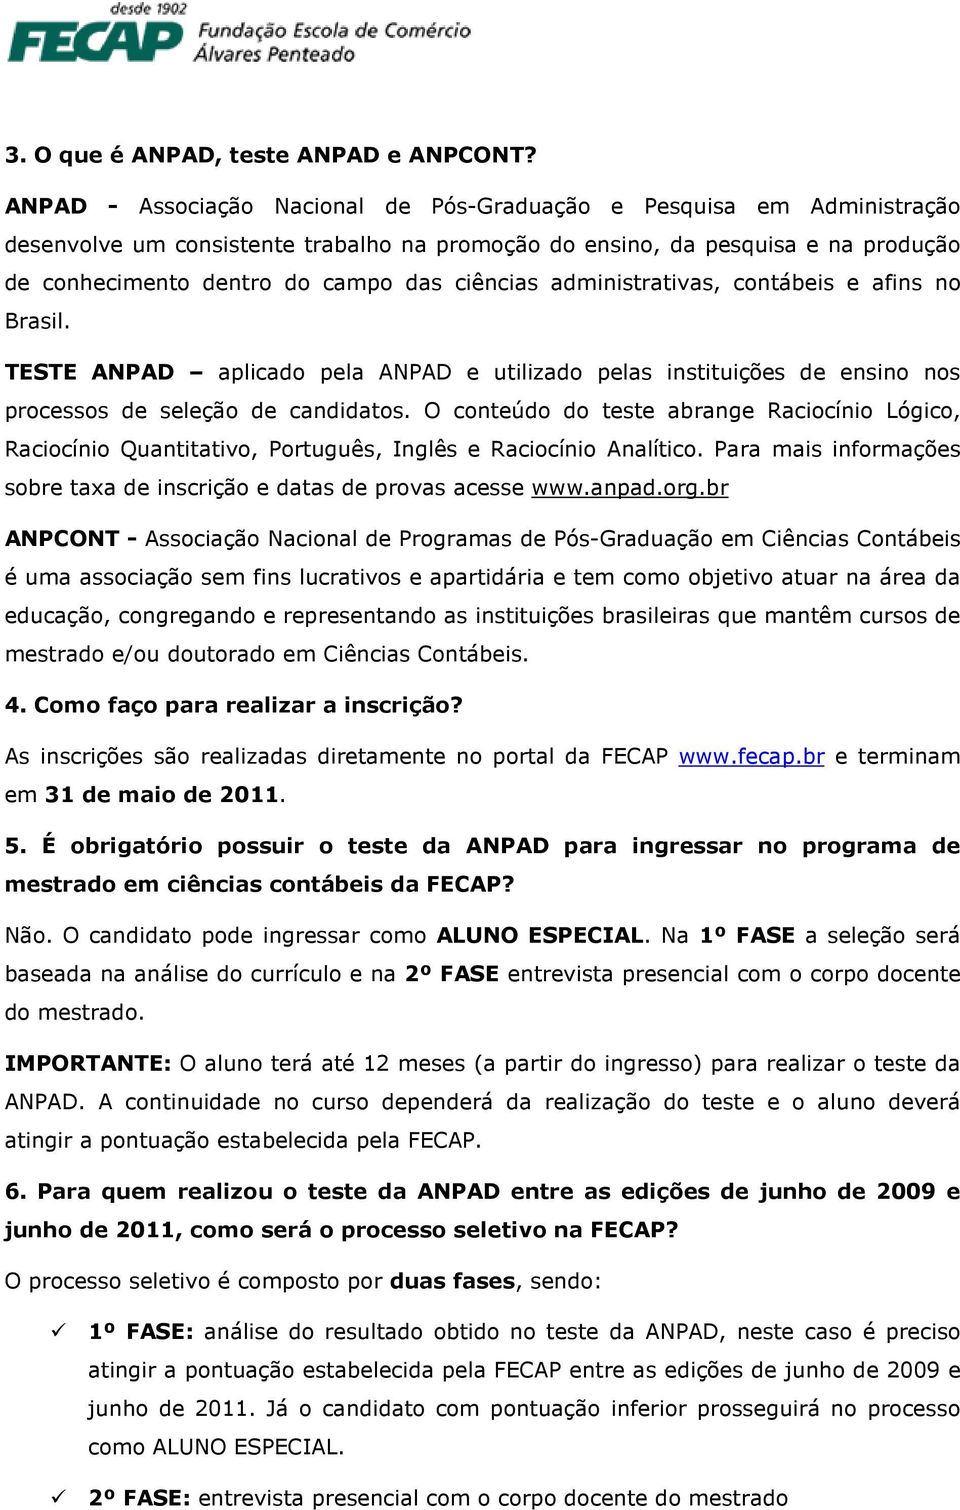 ciências administrativas, contábeis e afins no Brasil. TESTE ANPAD aplicado pela ANPAD e utilizado pelas instituições de ensino nos processos de seleção de candidatos.